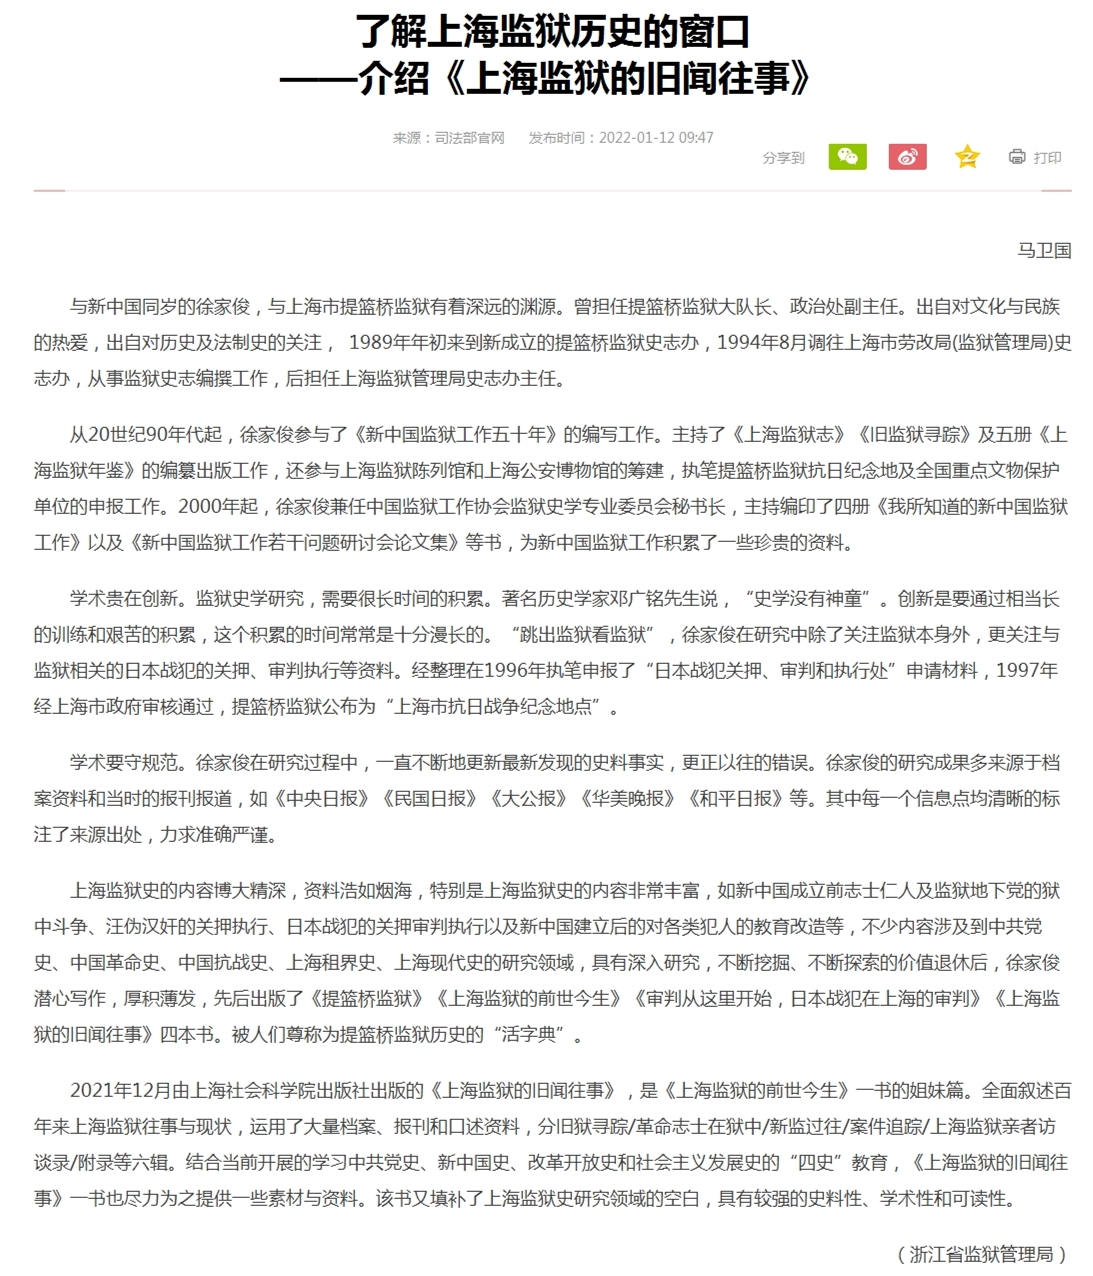 了解上海监狱历史的窗口——介绍《上海监狱的旧闻往事》.jpg